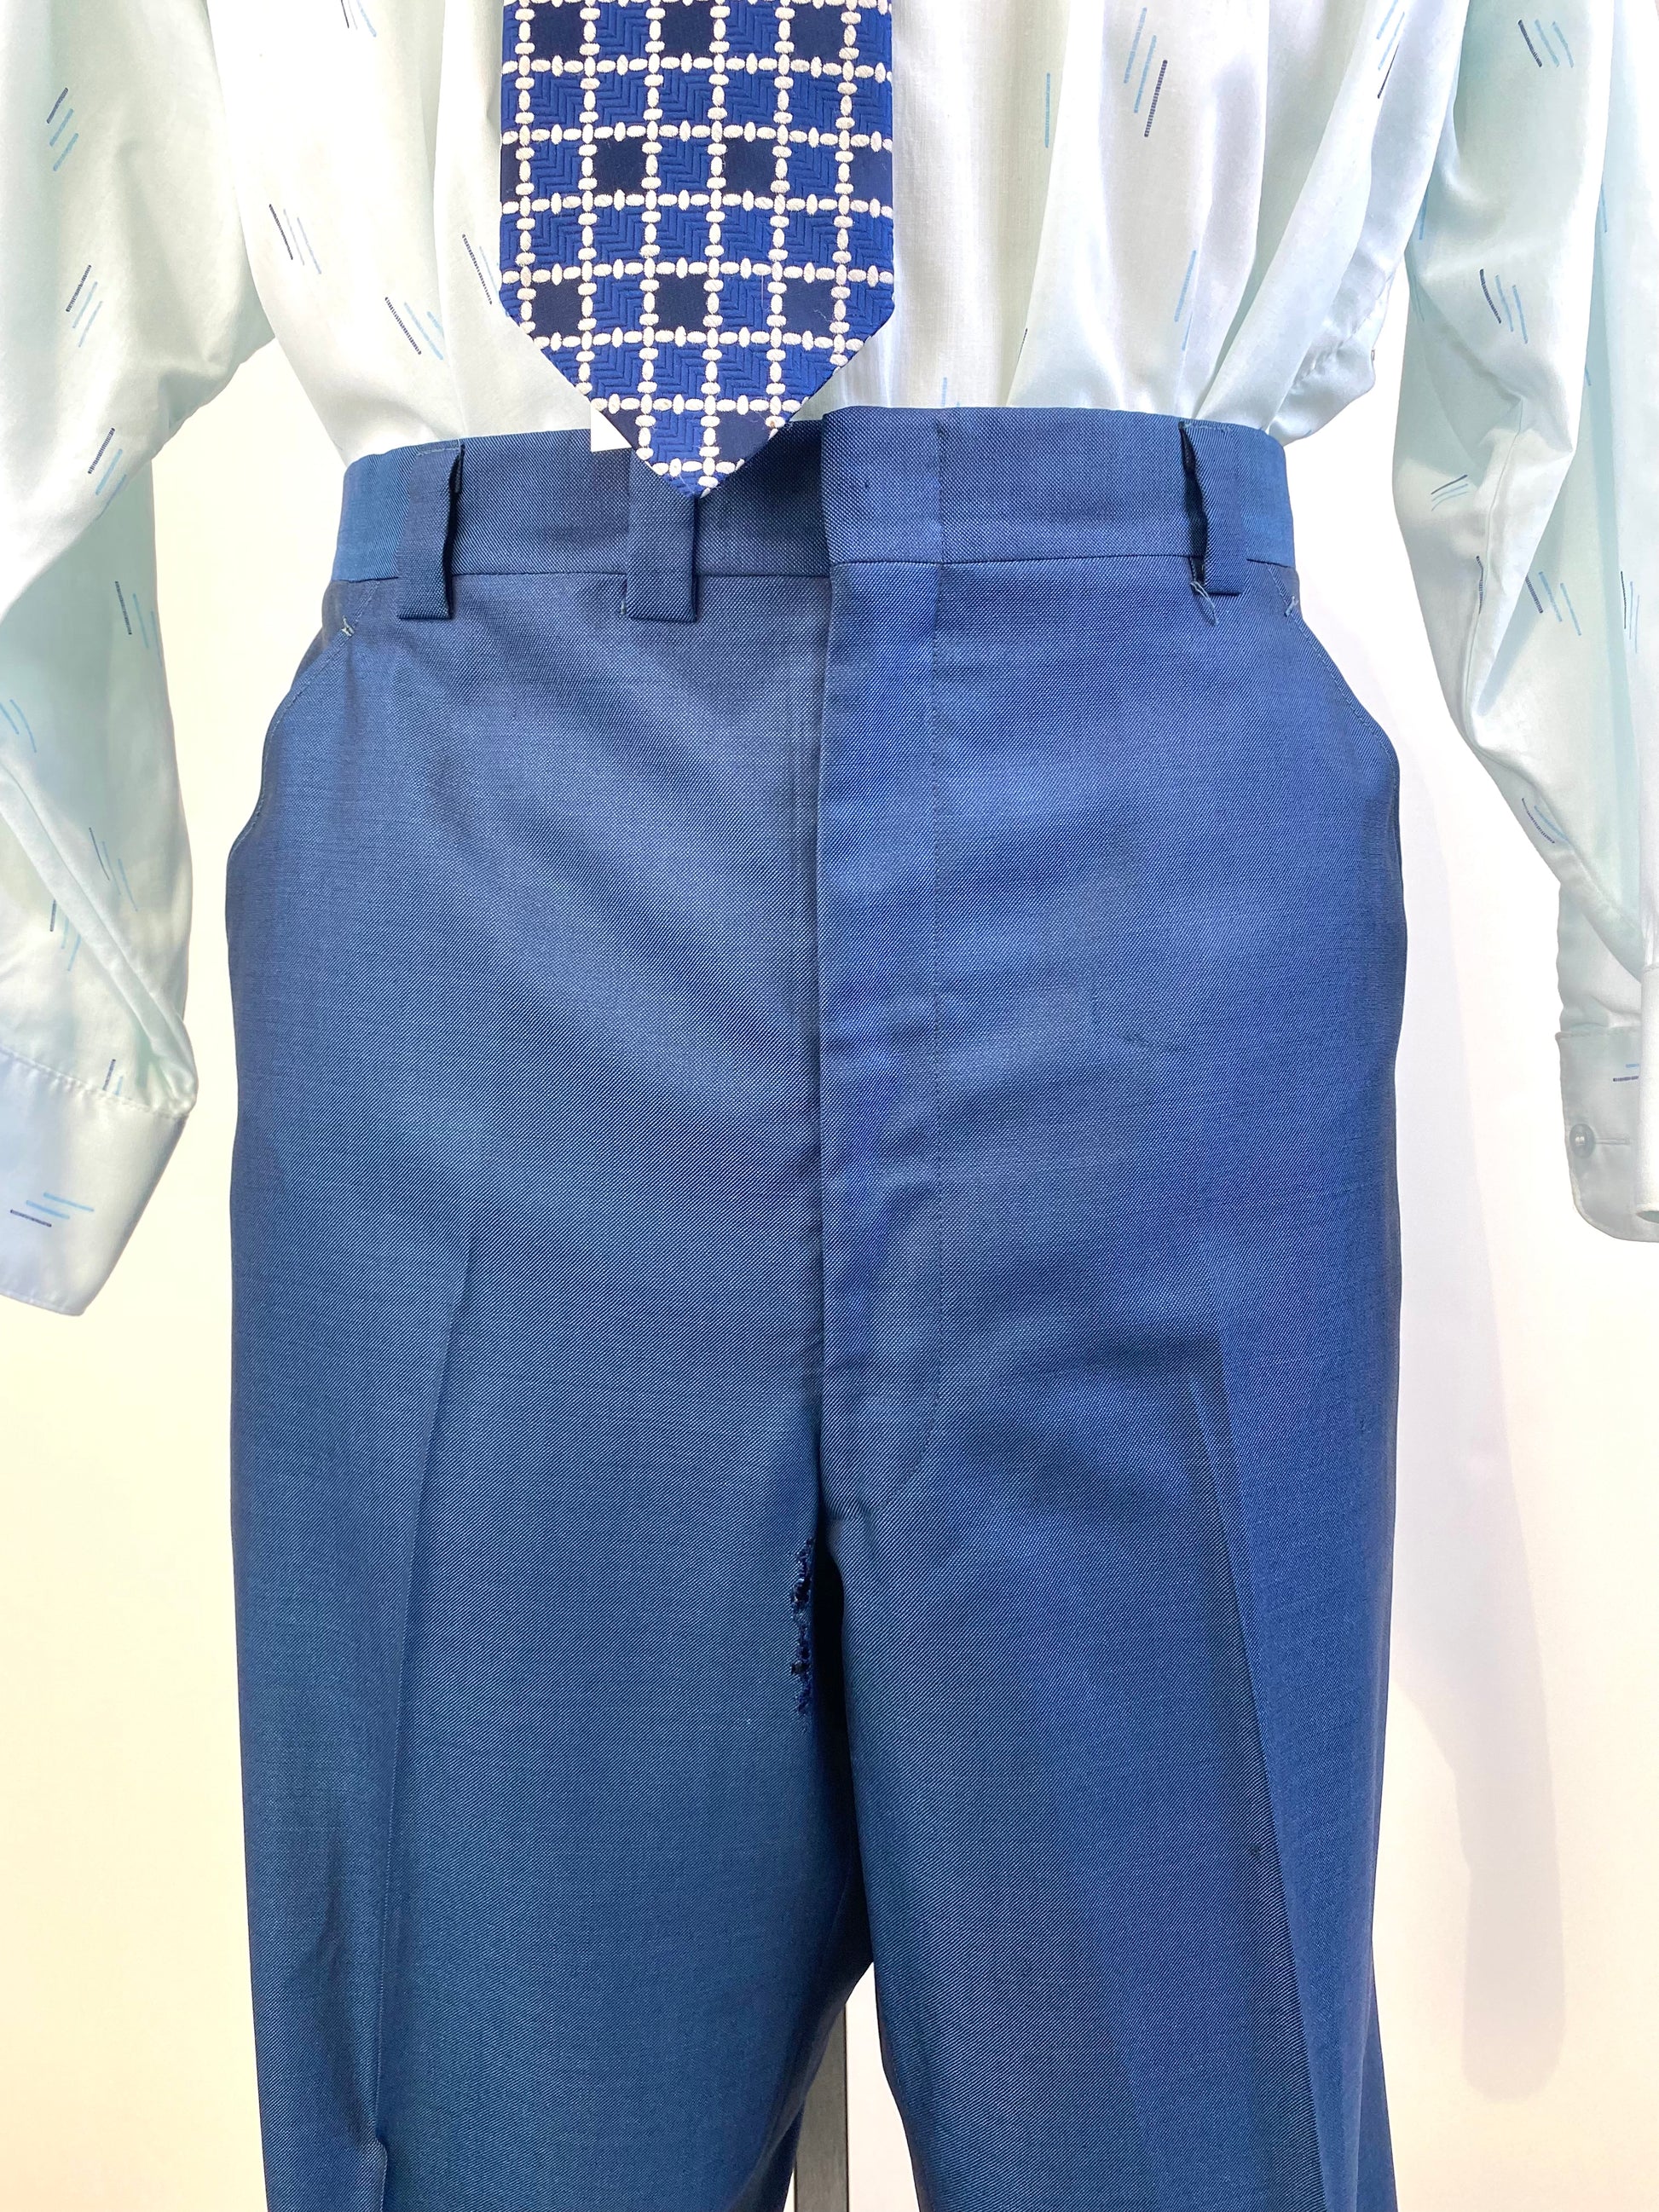 1970s Vintage Men's Suit, Blue Sharkskin 2-Piece Suit, Kleinhans, AS IS, C46